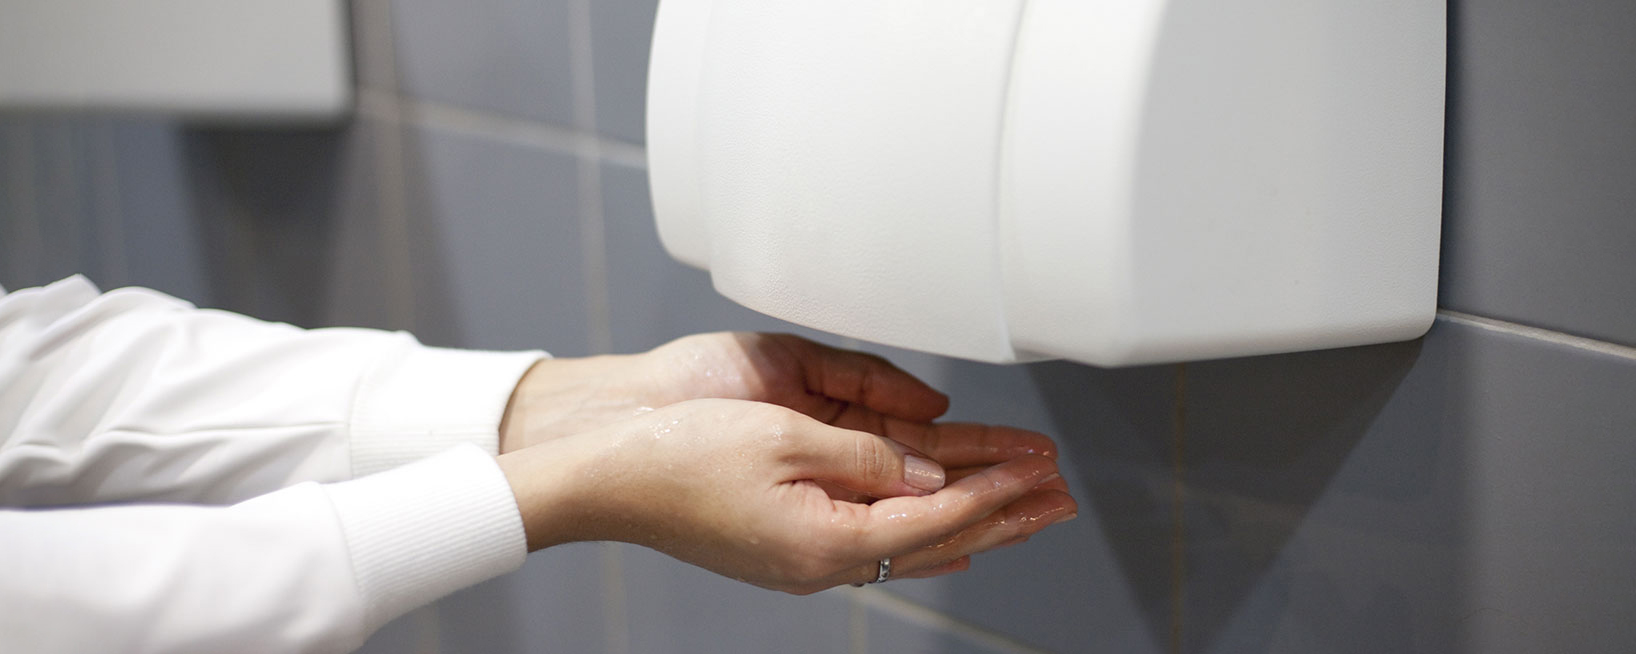 Как после мытья правильно сушить. Сушилка hand Dryer. Сушилка для рук в общественном туалете. Сушилка для рук в санузле. Бумажная сушилка для рук.